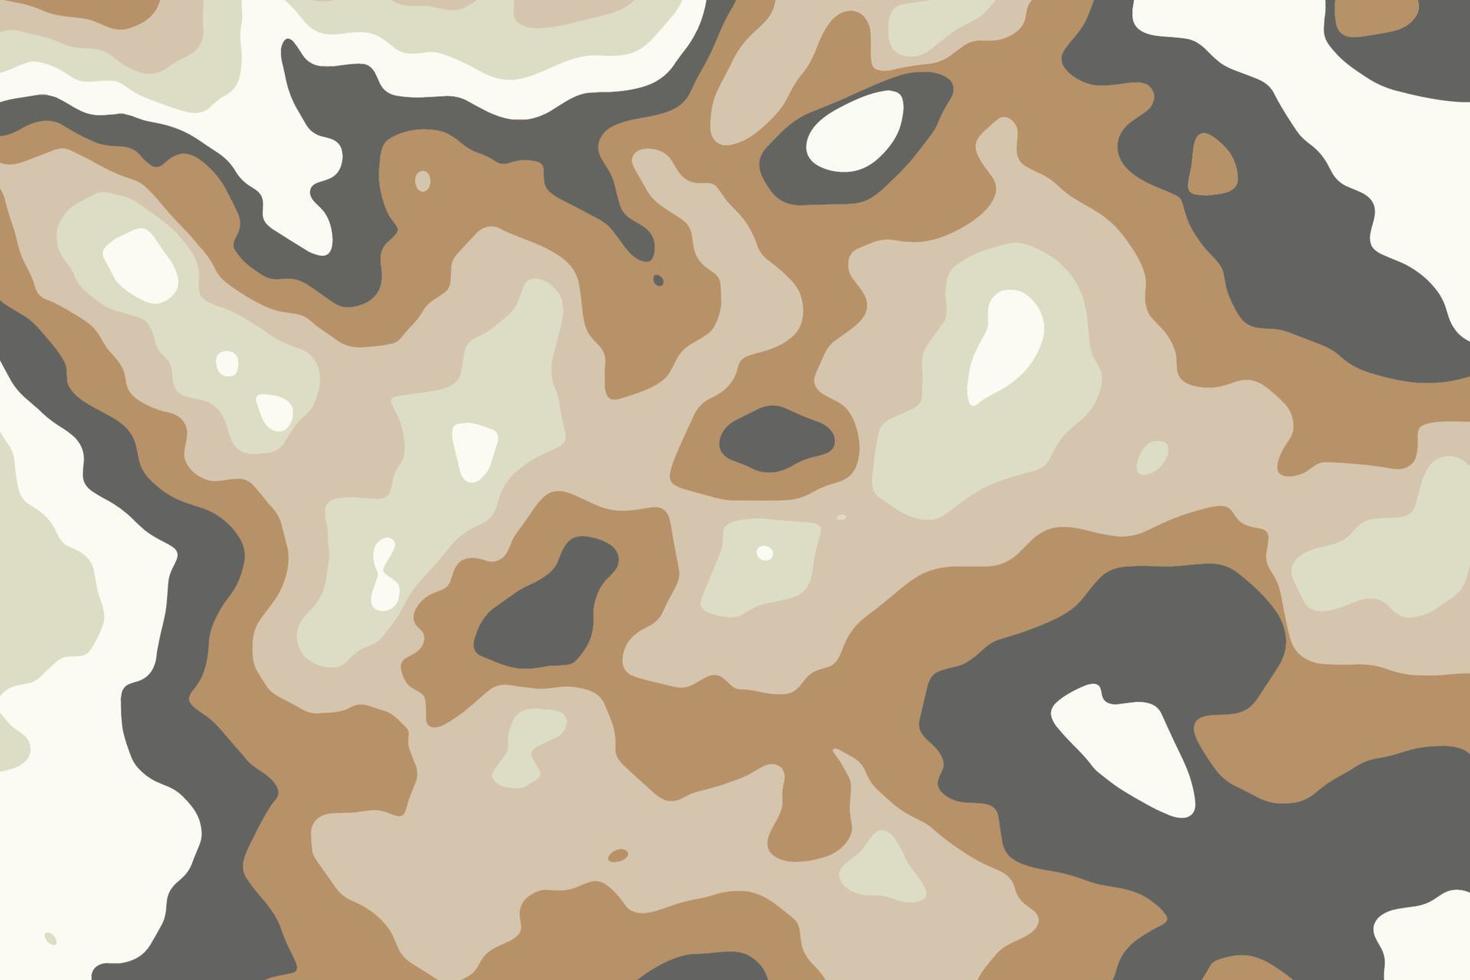 textura de camuflaje ondulado en colores caqui. diseño de patrón militar en color desierto. fondo de manchas líquidas de camuflaje abstracto vector